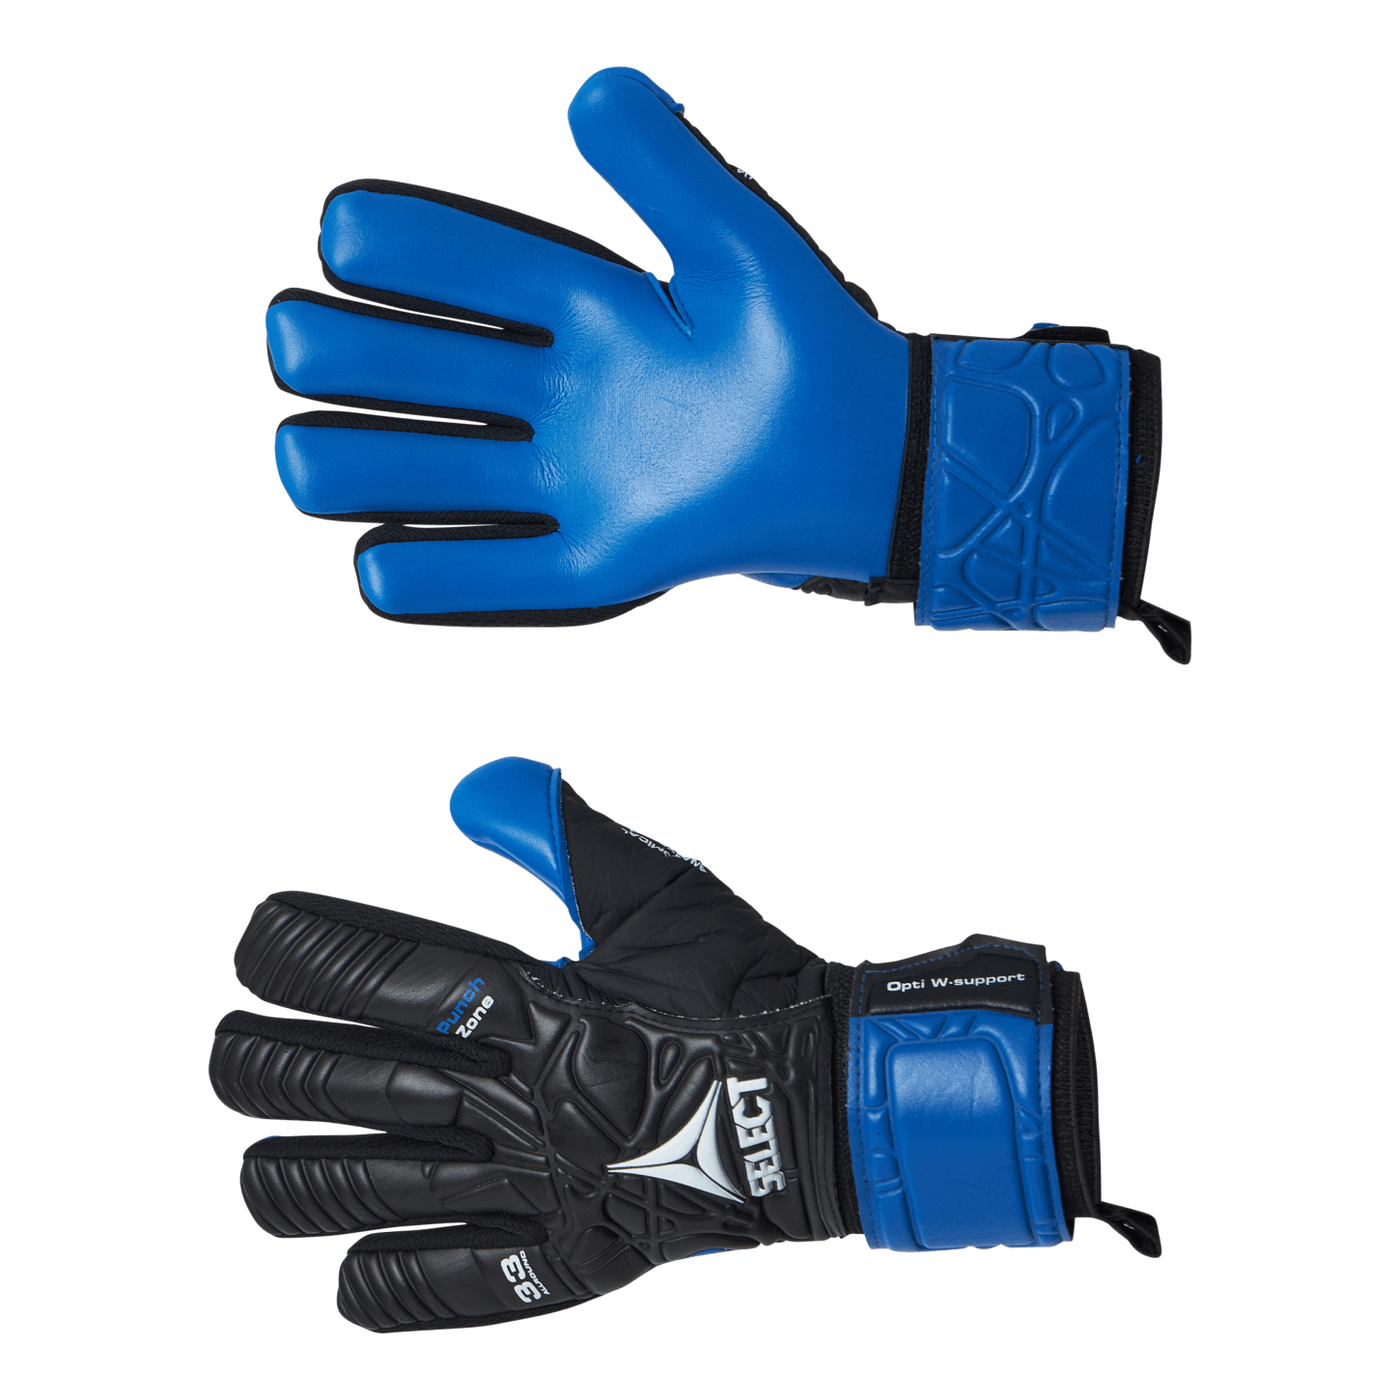 Gk Gloves 33 Allround V21 Black/blue